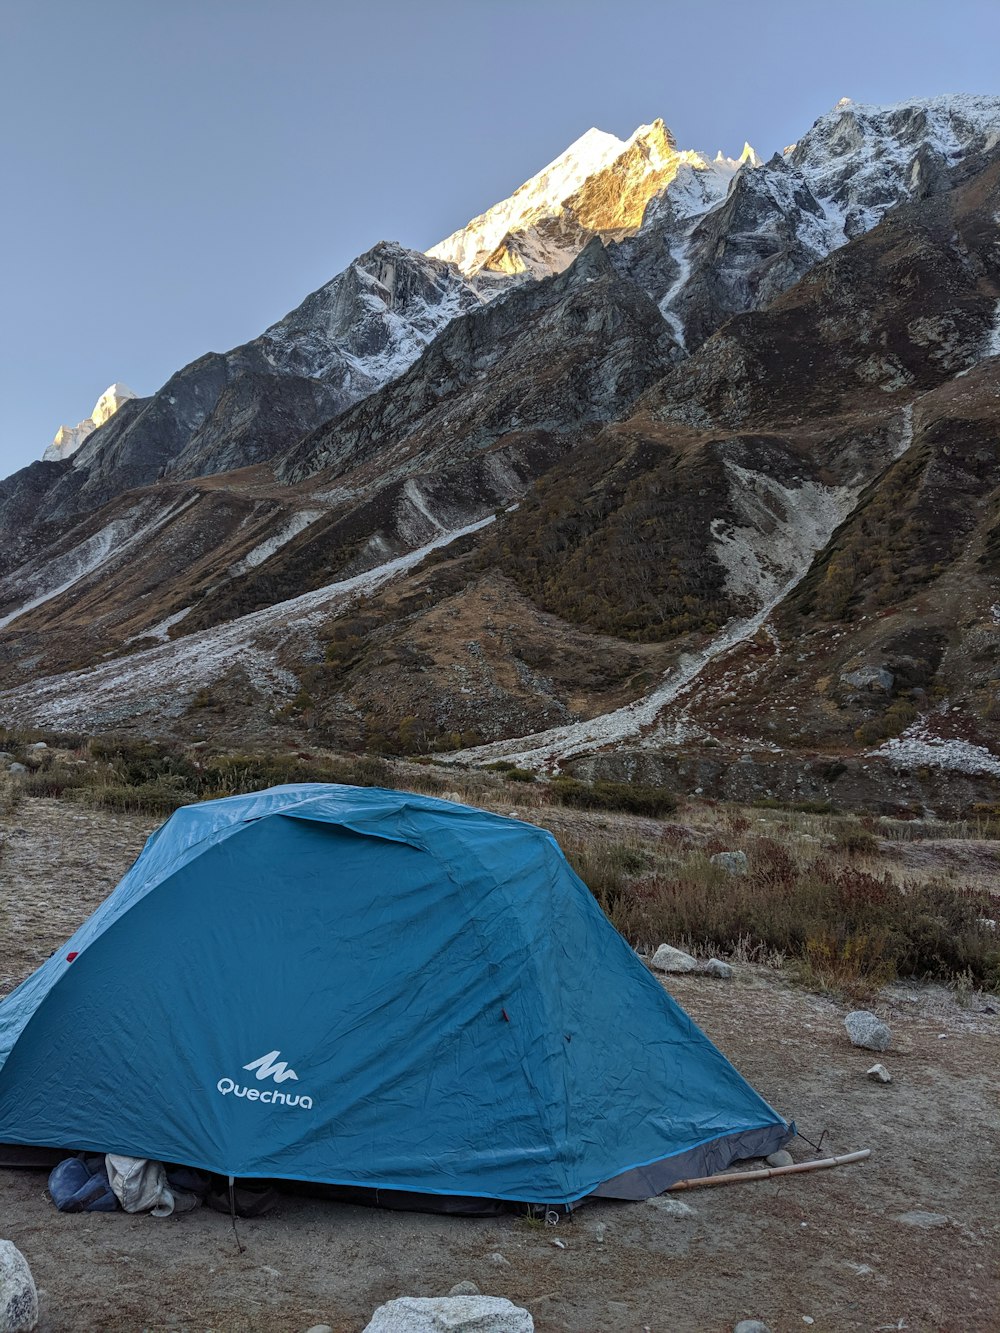 Tenda a cupola blu vicino alla montagna innevata